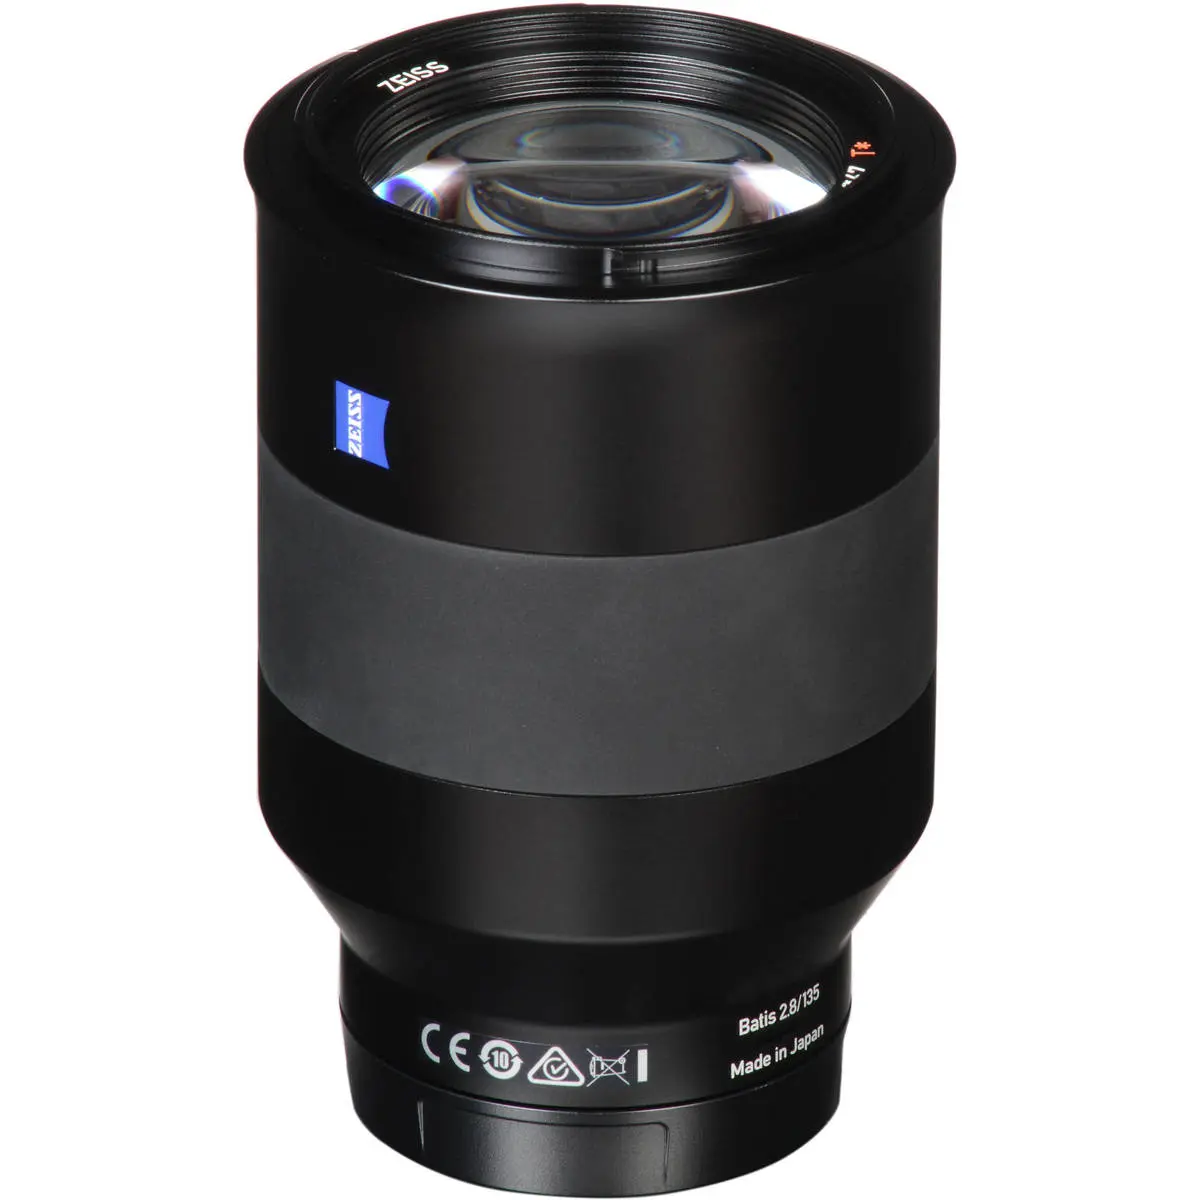 16. Carl Zeiss Batis 135mm F2.8 for Sony E mount Lens